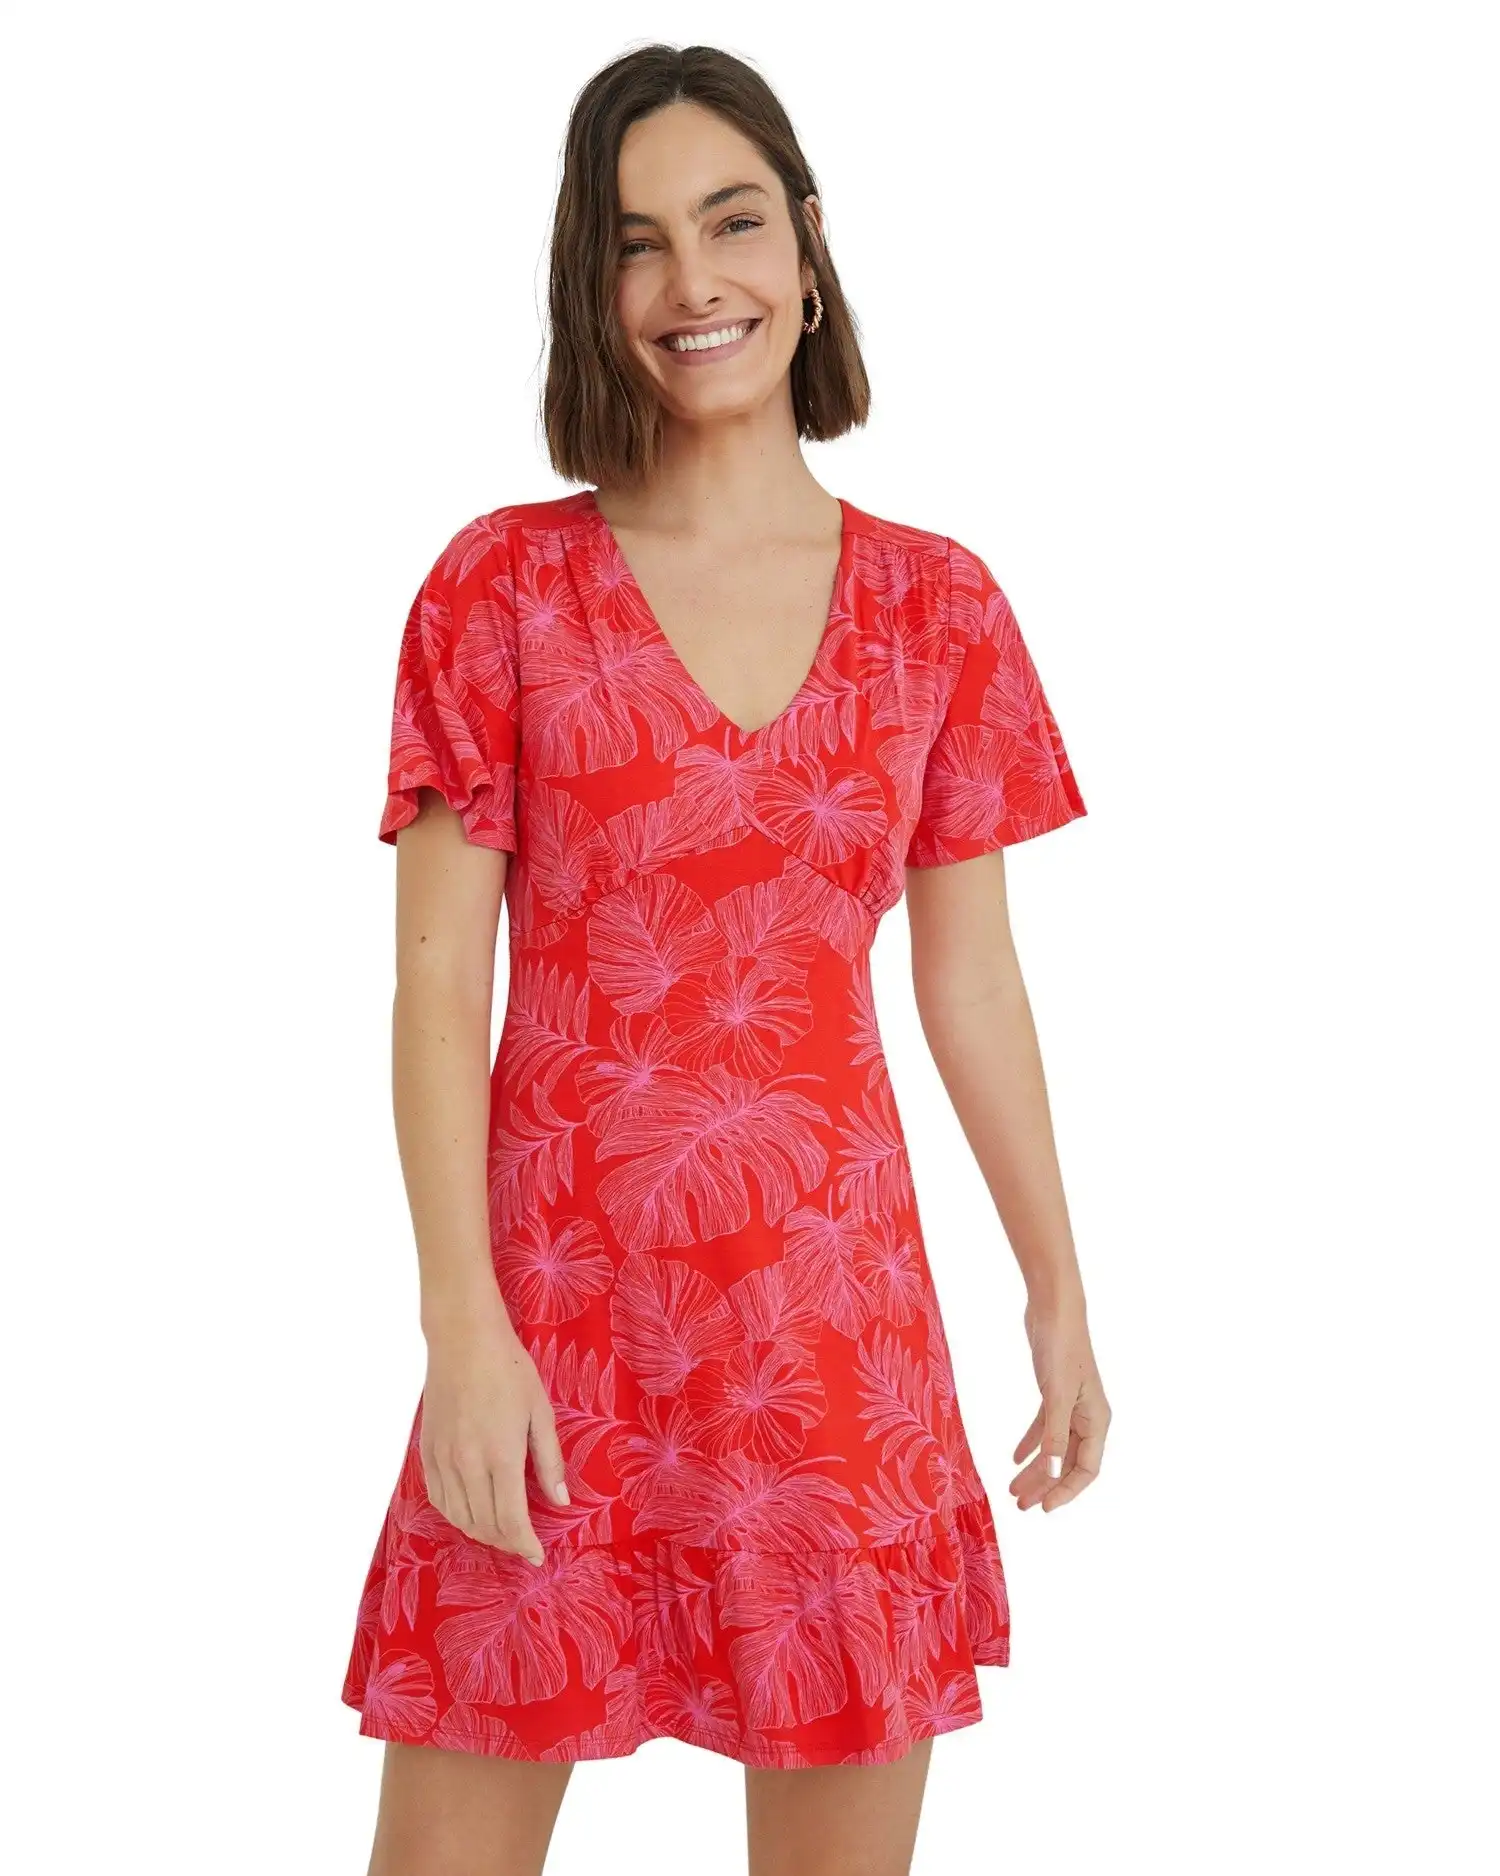 Desigual Women's Dress In Red